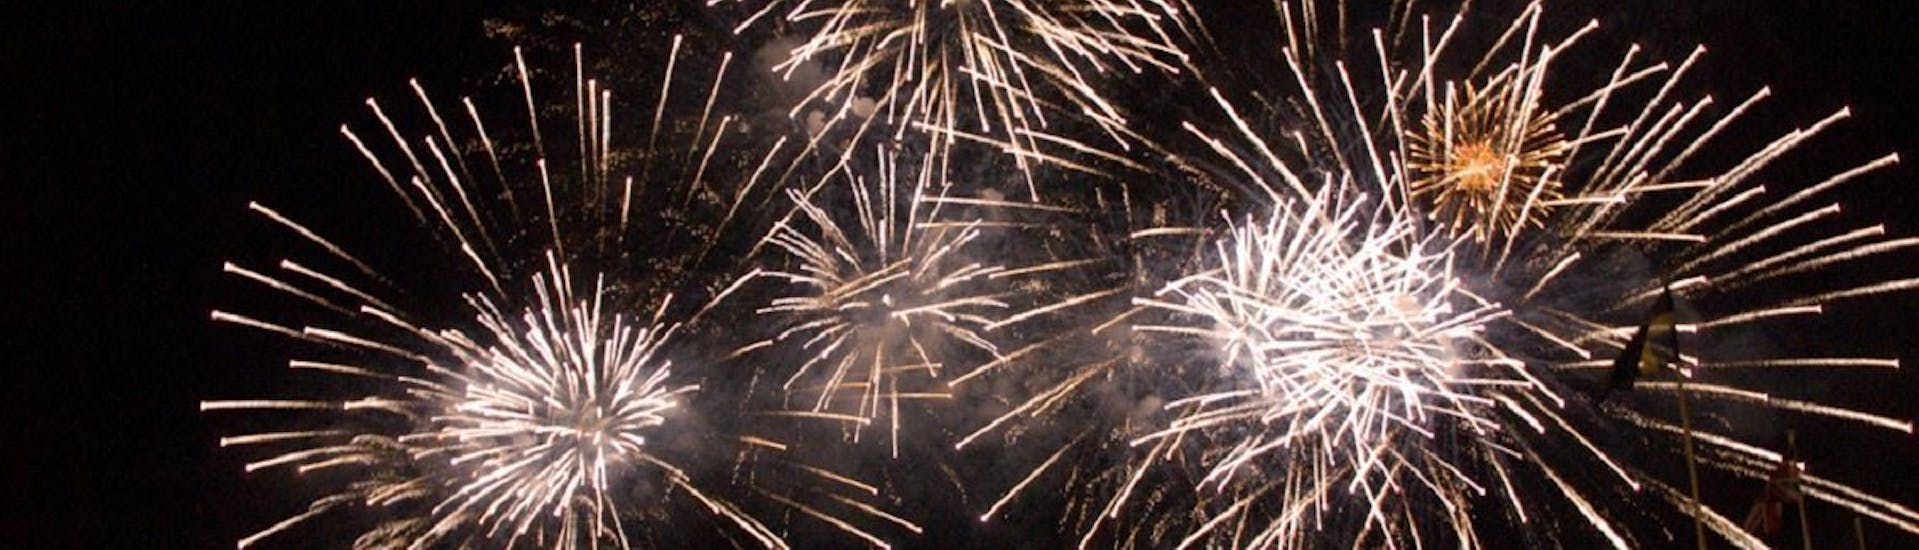 Großartiges Bild des Feuerwerks zum Fest Mariä Himmelfahrt, das man während der Bootstour von Sorrento nach Positano mit Feuerwerk bewundern kann.